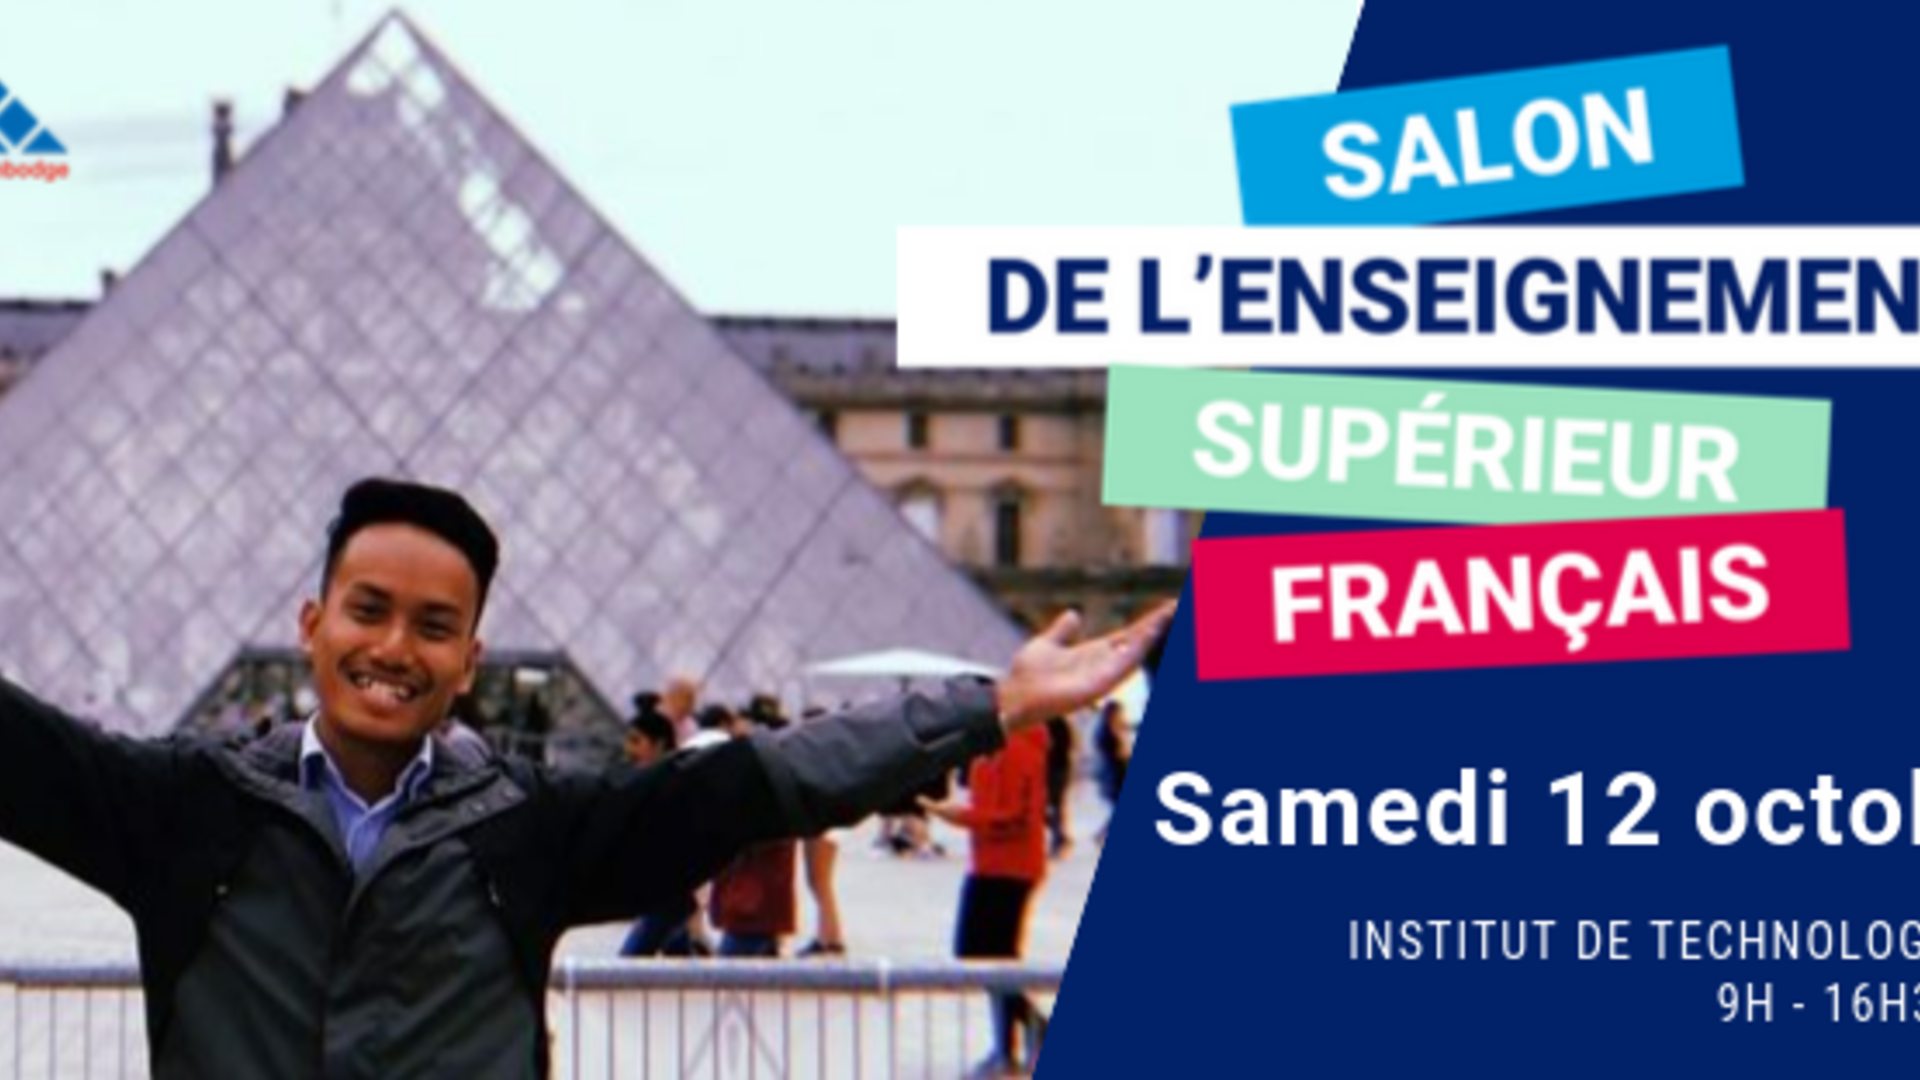 Salon de l'enseignement supérieur français 2019